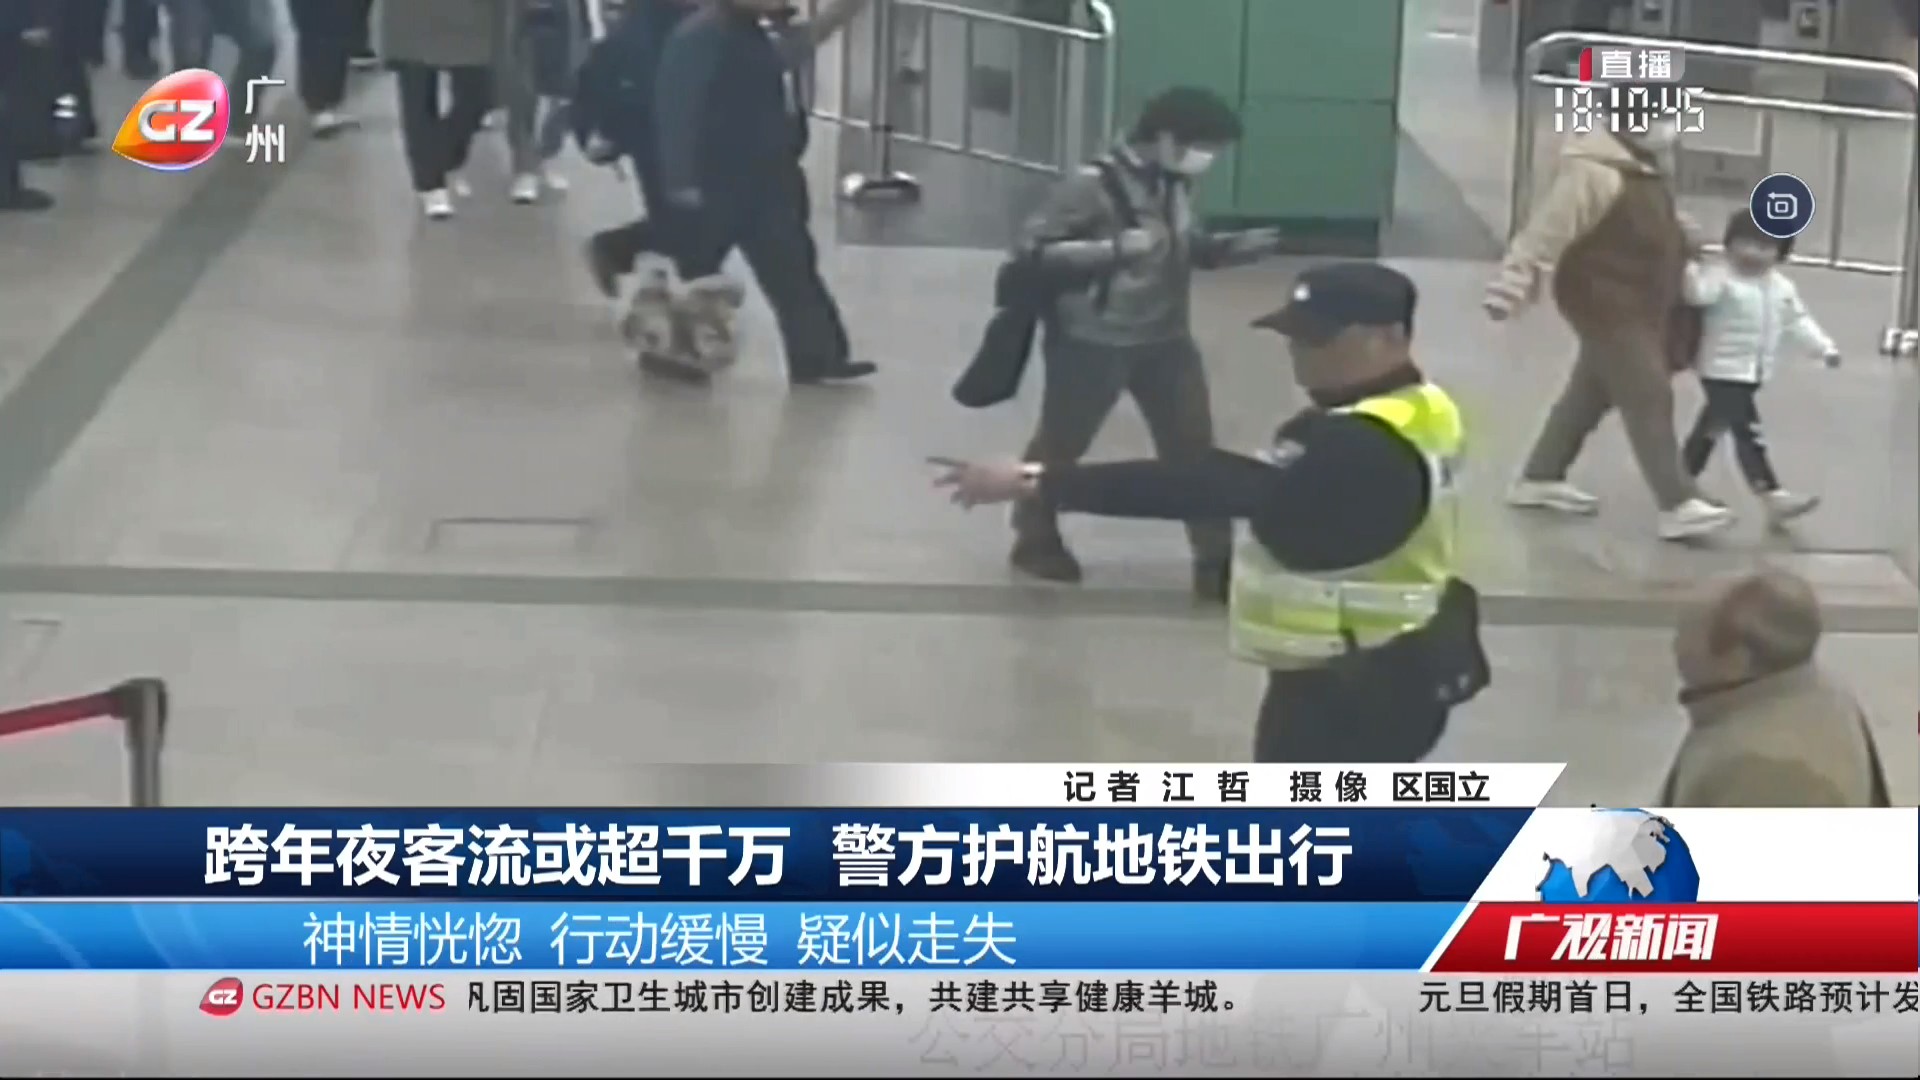 广州台综合频道 广视新闻 跨年夜客流或超千万 警方护航地铁出行